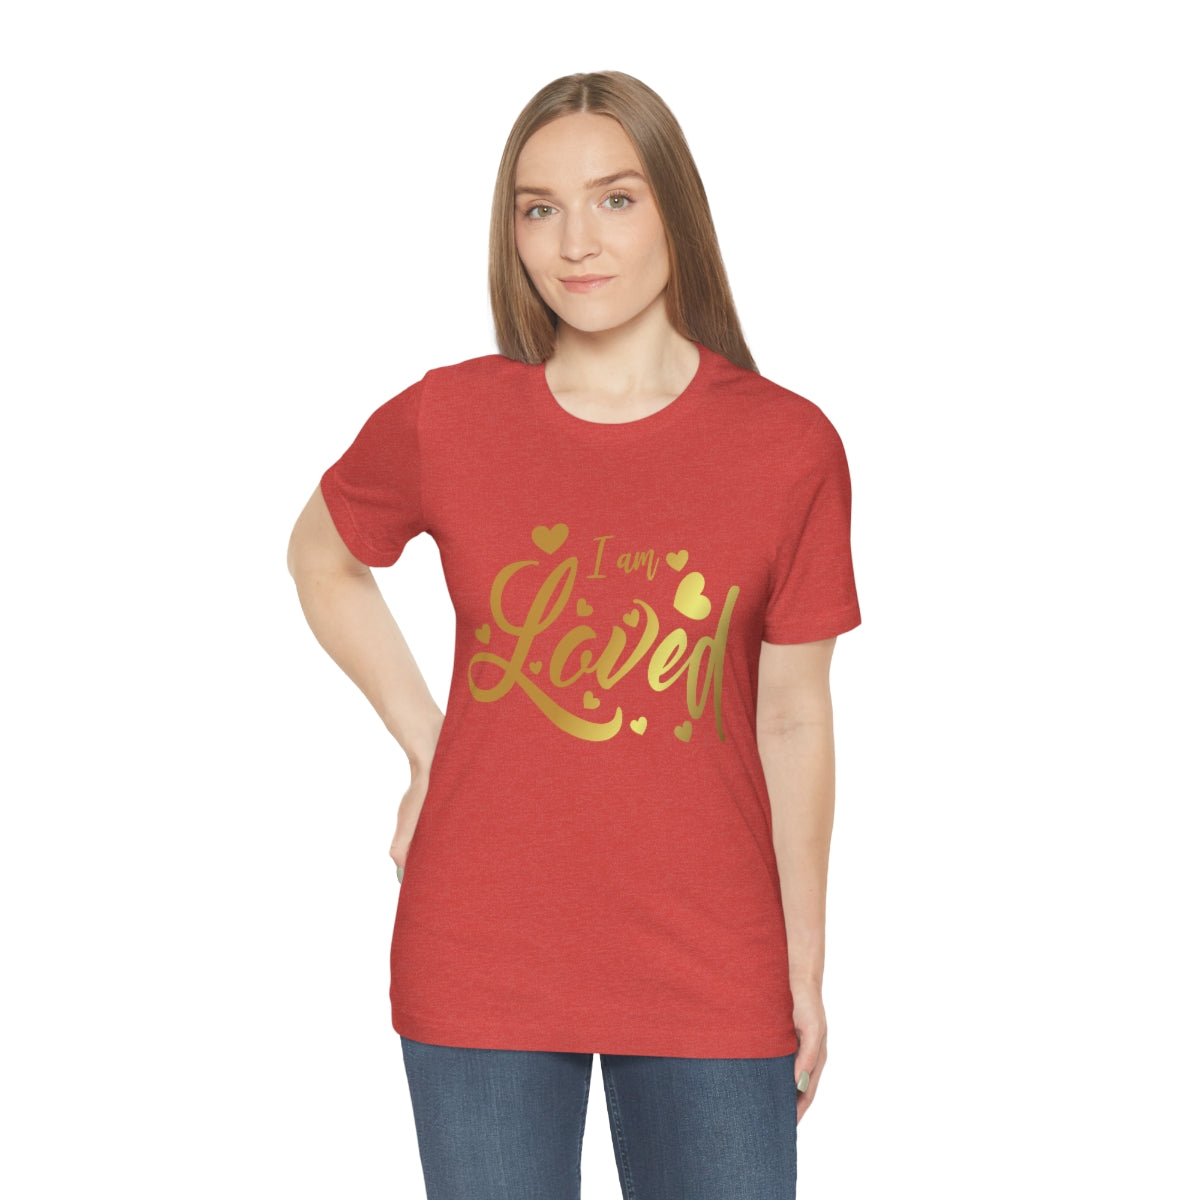 Affirmation Feminist Pro Choice T-Shirt Unisex Size, I am Loved Printify